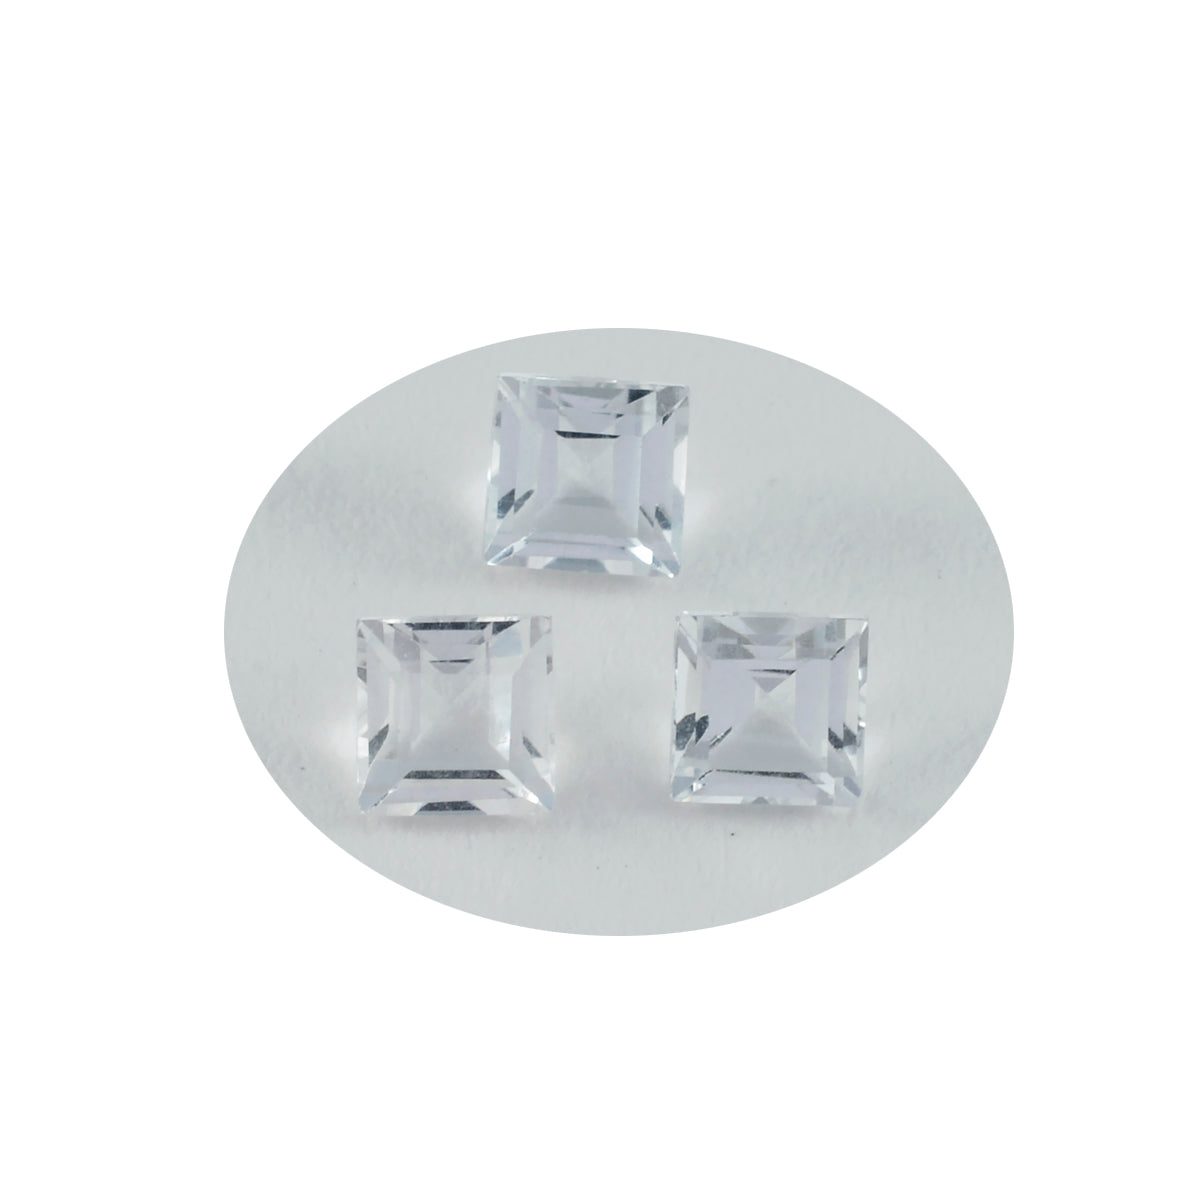 Riyogems 1pc quartz cristal blanc à facettes 5x5mm forme carrée jolie qualité pierres précieuses en vrac